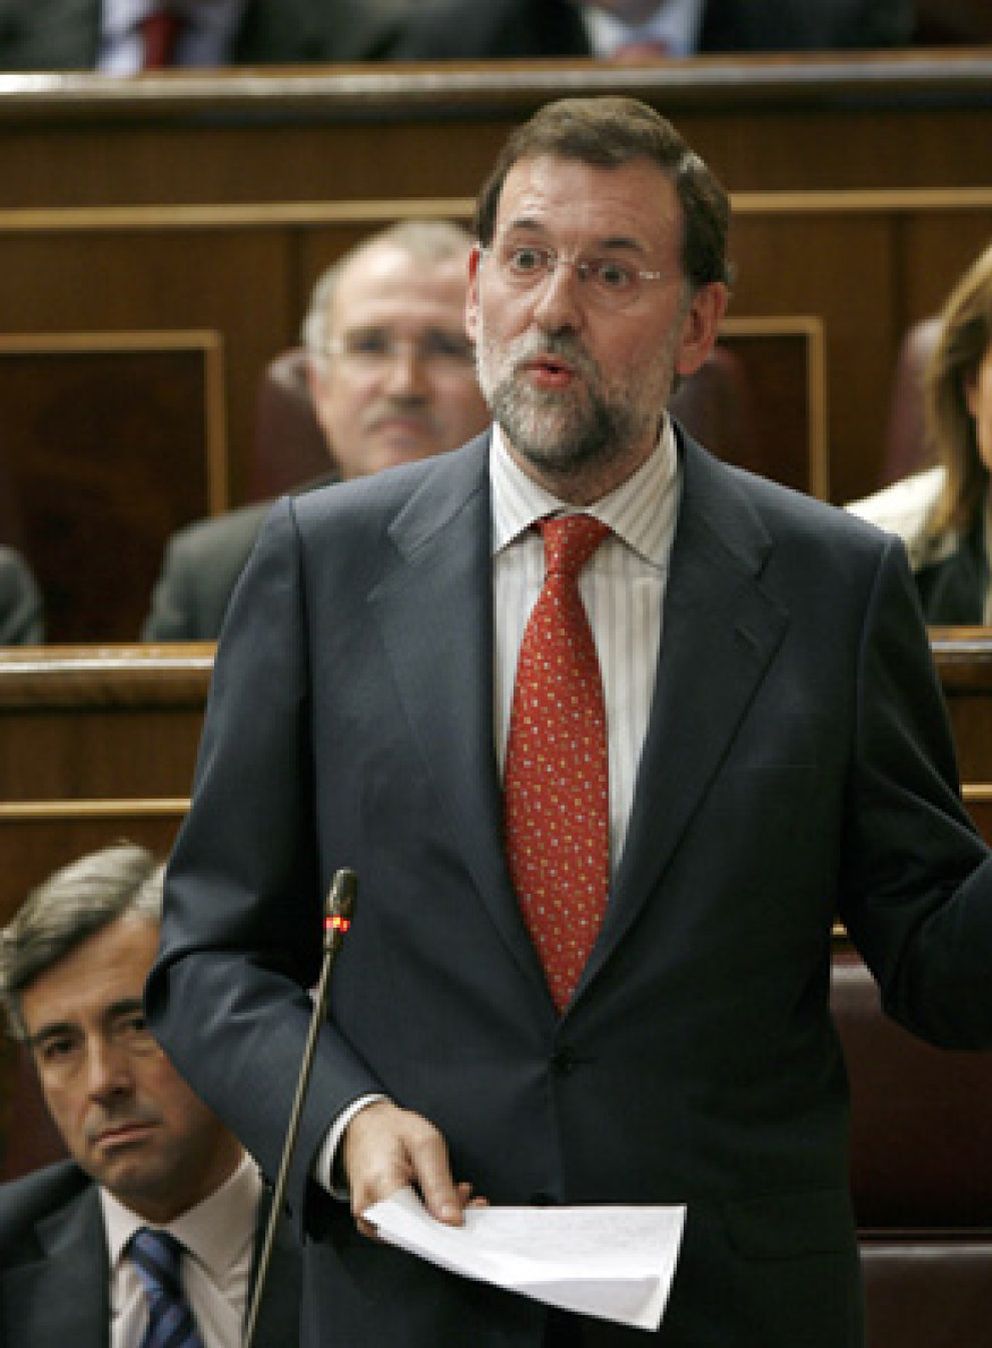 Foto: Mariano Rajoy devuelve el golpe a Zarzalejos, director de 'ABC': “No hay intención de quitar a nadie”